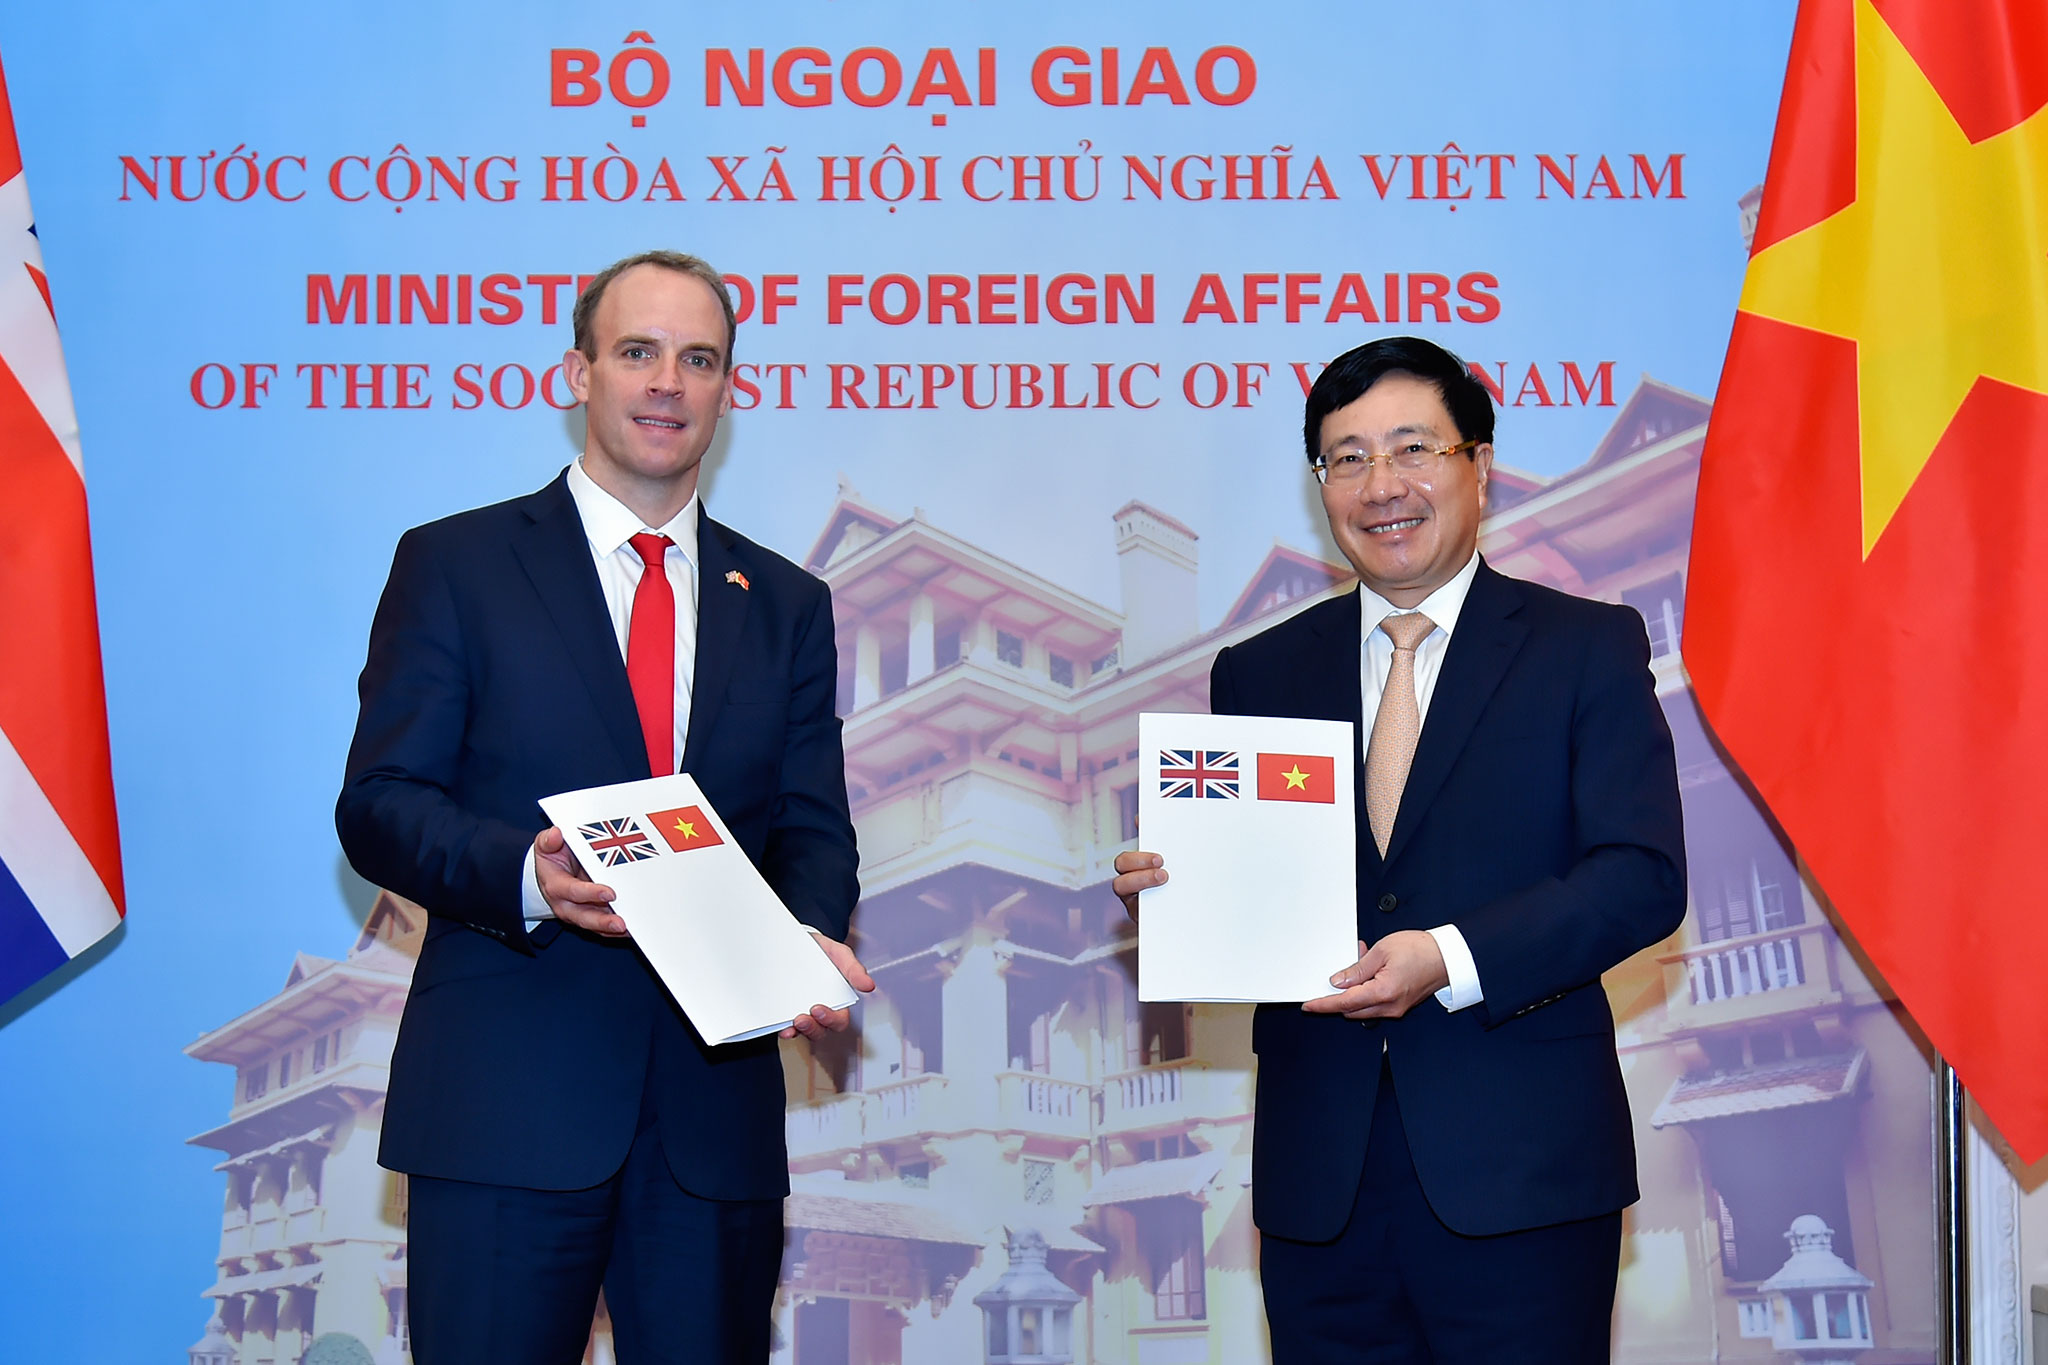 Quan hệ đối tác Việt Nam - Vương quốc Anh là một trong những quan hệ đối ngoại quan trọng nhất của Việt Nam. Đây là nơi các quốc gia có thể cùng nhau hợp tác và tạo ra những giá trị tích cực cho cả hai bên. Tuyên bố chung về Quan hệ Đối tác chiến lược Việt Nam - Vương quốc Anh là nơi cập nhật những thông tin mới nhất về việc hợp tác giữa hai nước. Hãy cập nhật và tìm hiểu thêm về quan hệ đối tác này để hiểu rõ hơn về sự phát triển của Việt Nam trong tương lai.